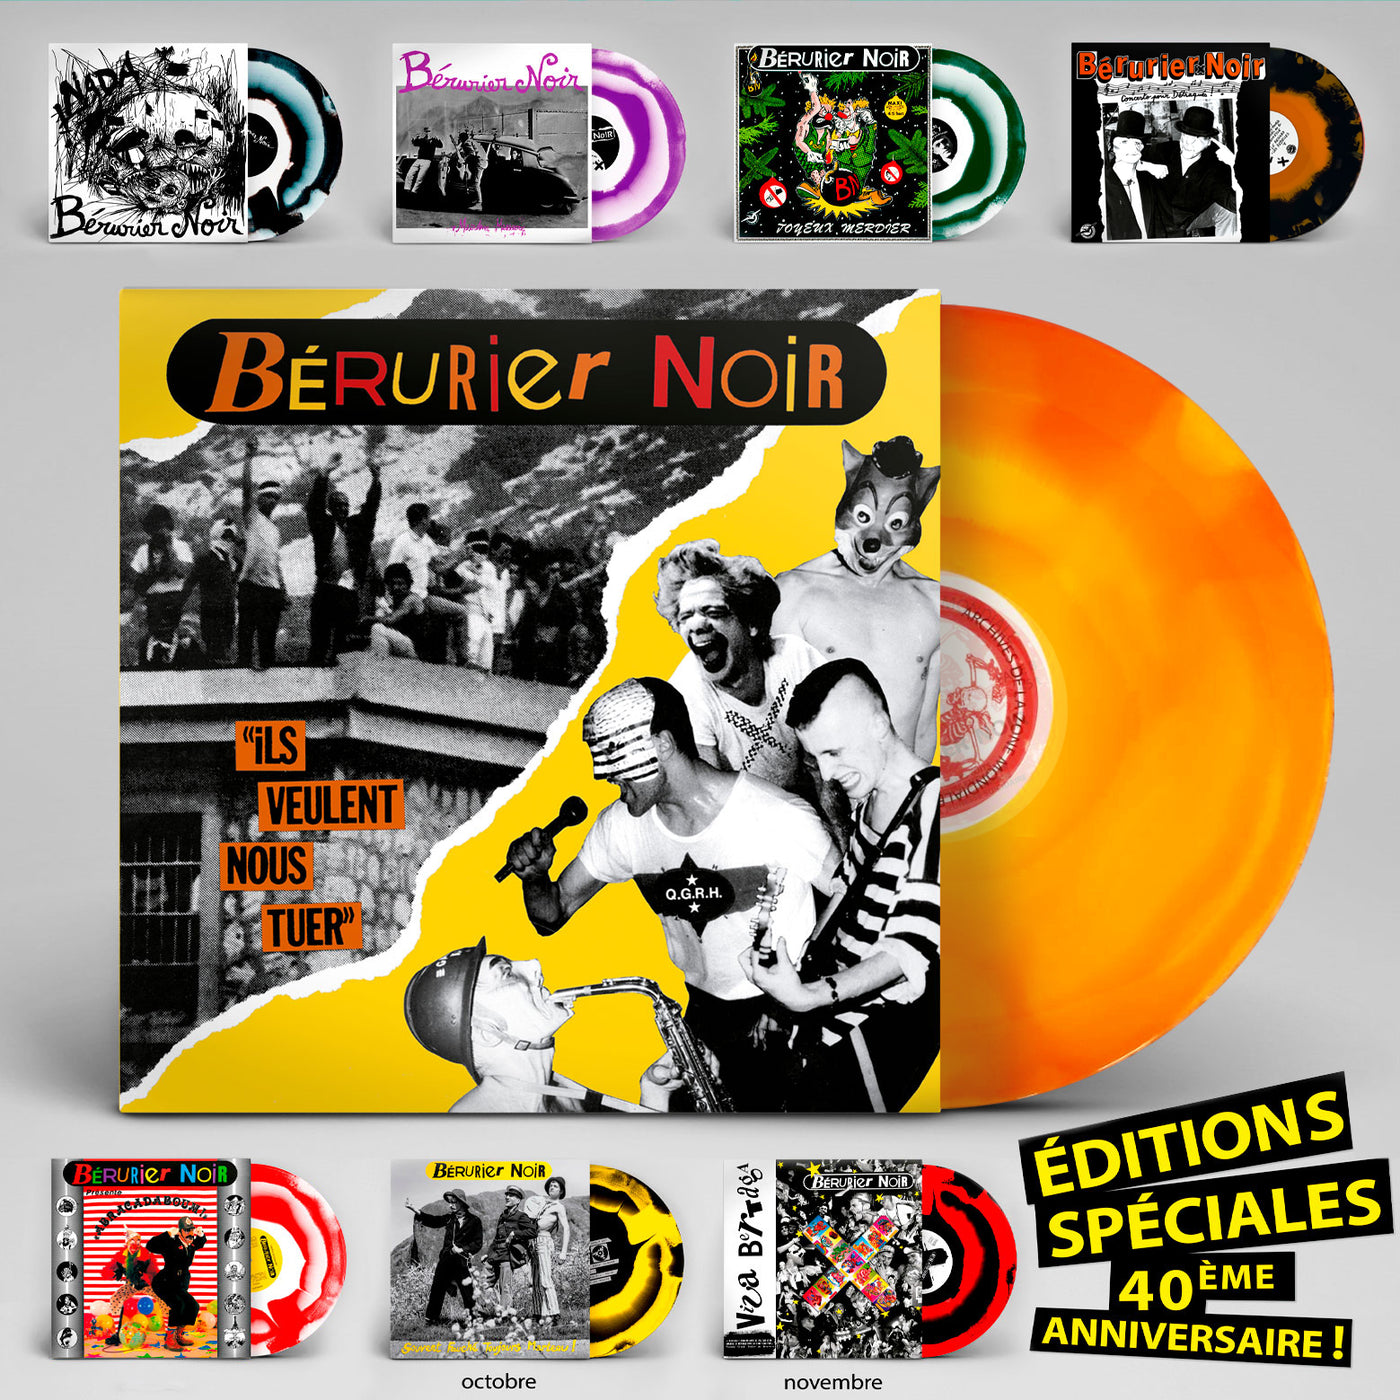 Bérurier Noir "ils veulent nous tuer" édition spéciale 40ème anniversaire 1983-2023, vinyle couleur orange et jaune, finition "couronne"